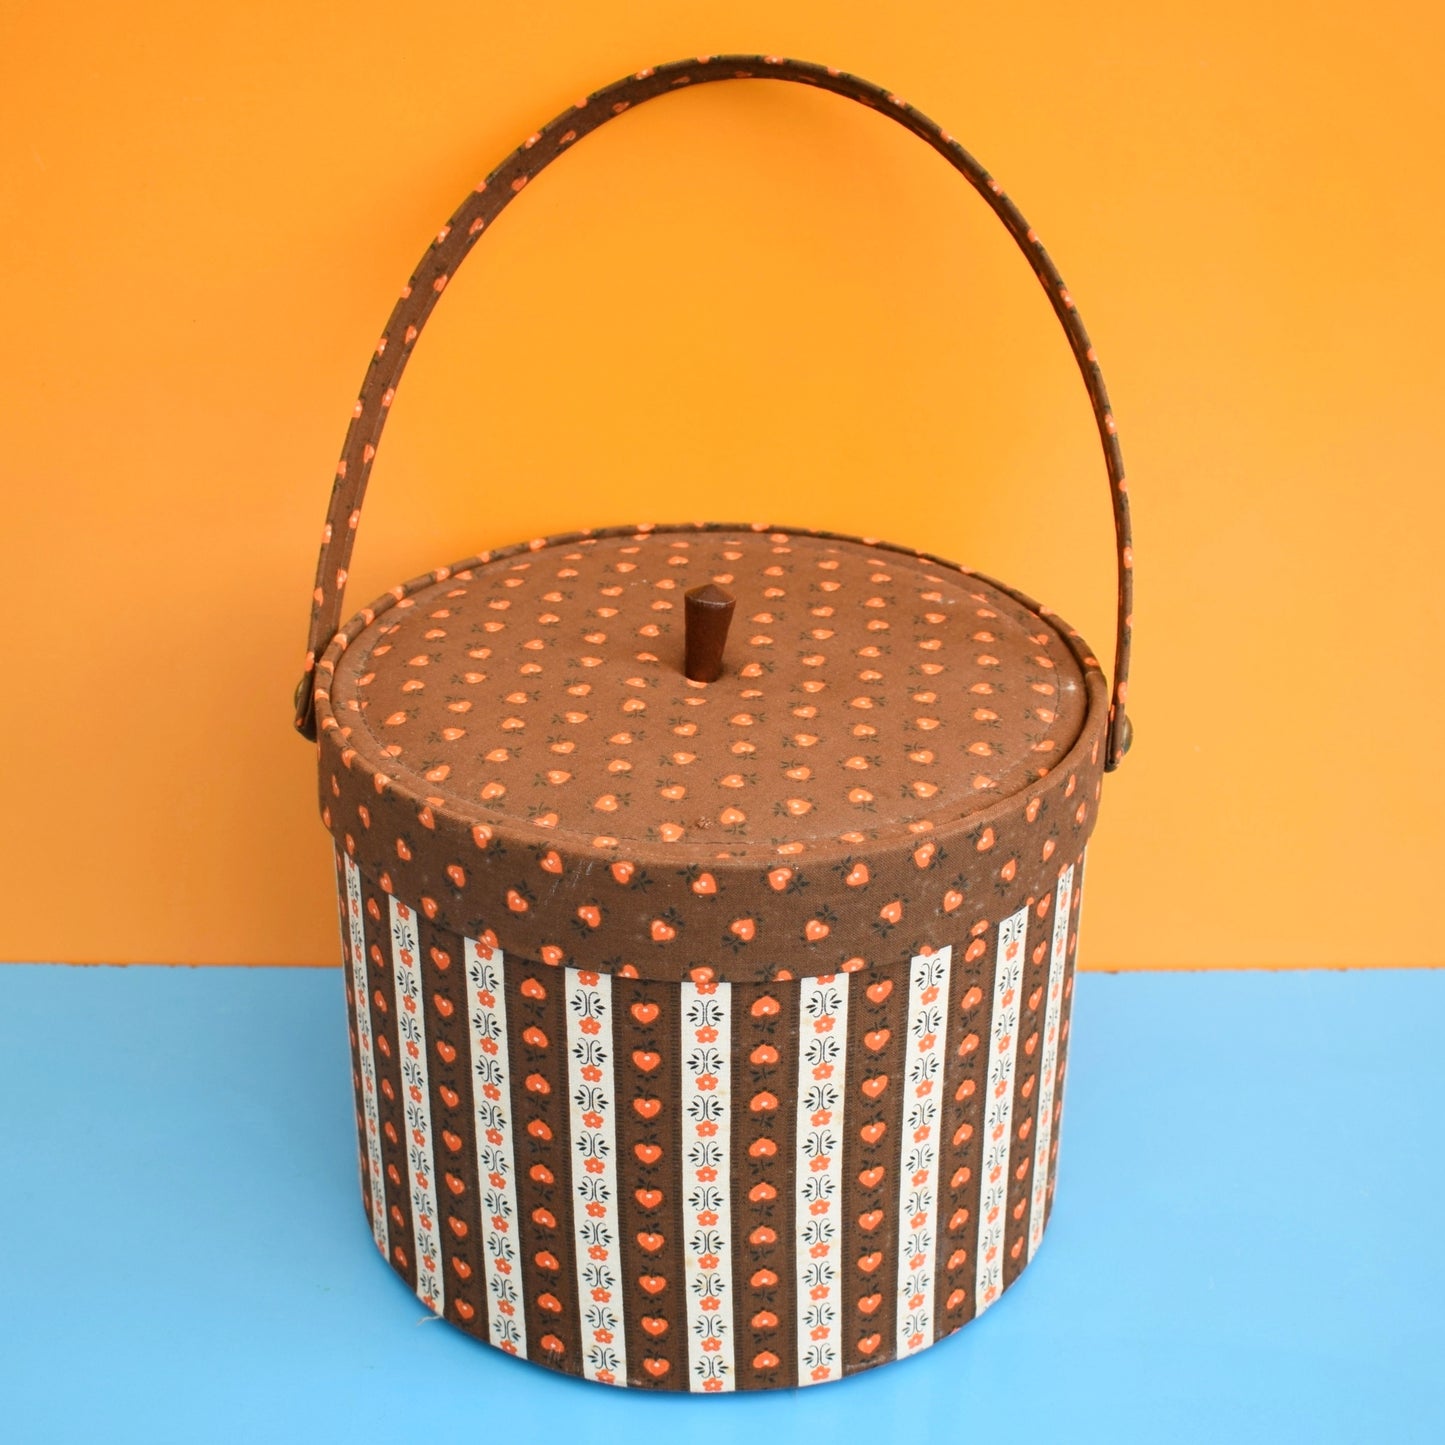 Vintage 1960s Round Sewing / Hobby Box - Brown & Orange